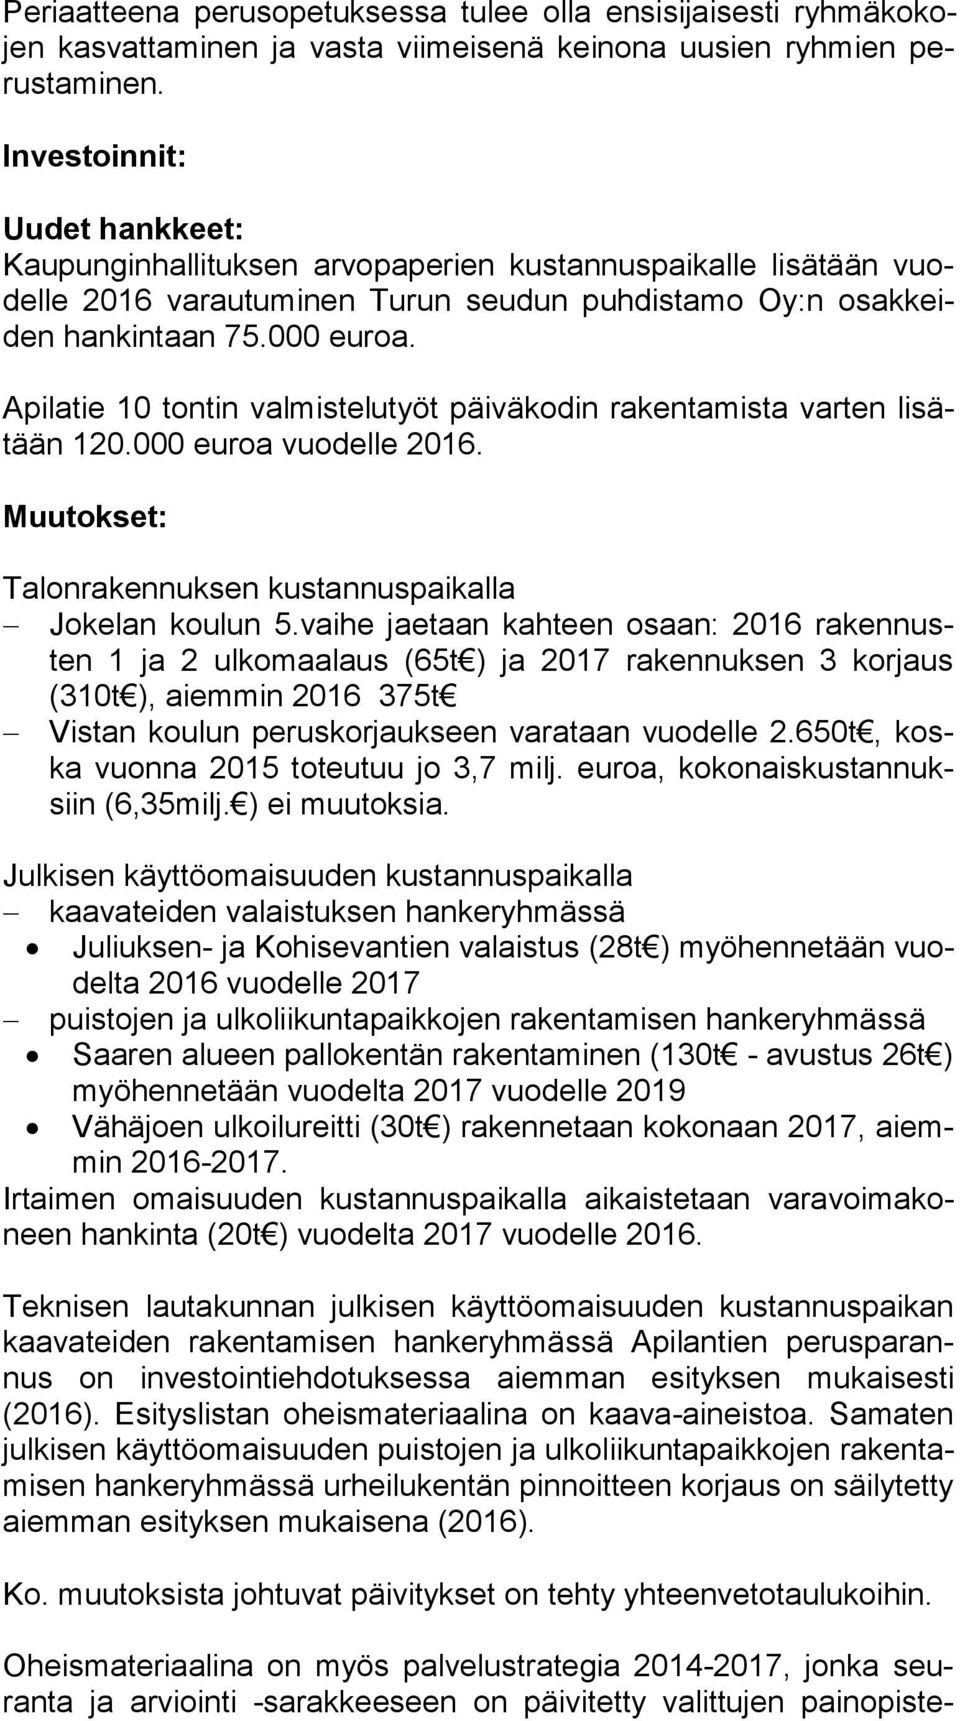 Apilatie 10 tontin valmistelutyöt päiväkodin rakentamista varten li sätään 120.000 euroa vuodelle 2016. Muutokset: Talonrakennuksen kustannuspaikalla Jokelan koulun 5.